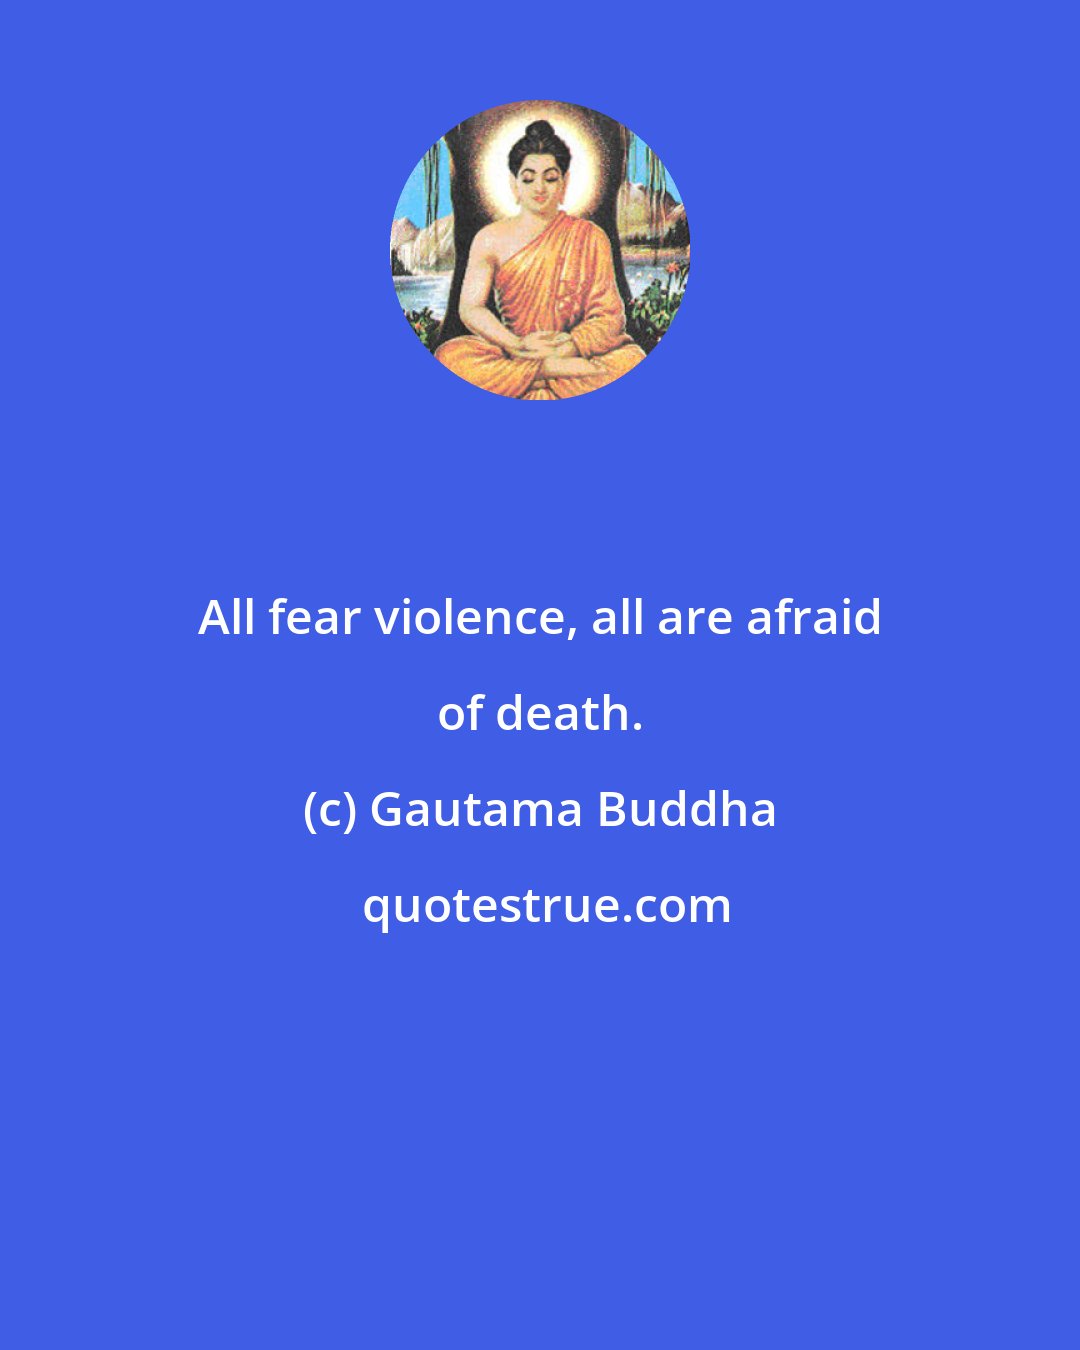 Gautama Buddha: All fear violence, all are afraid of death.